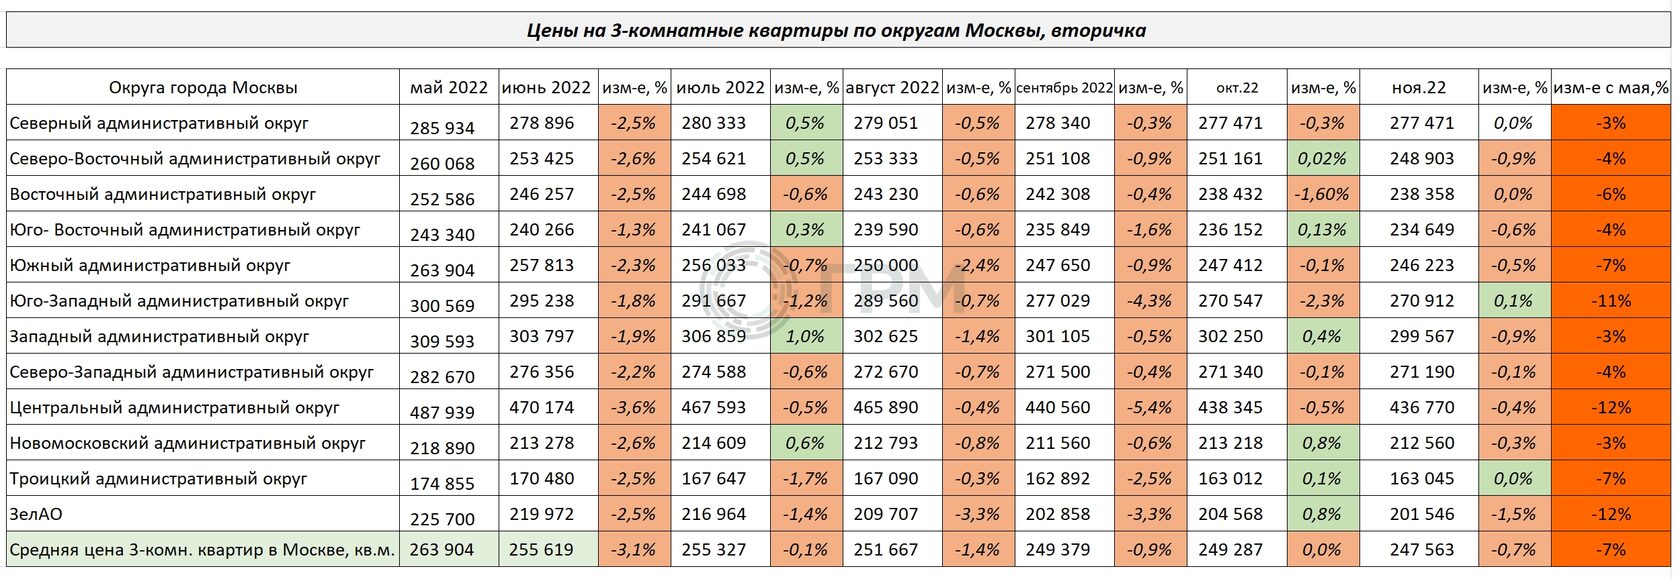 Изменение цен на 3-х комнатные квартиры по округам Москвы с мая по ноябрь 2022 года